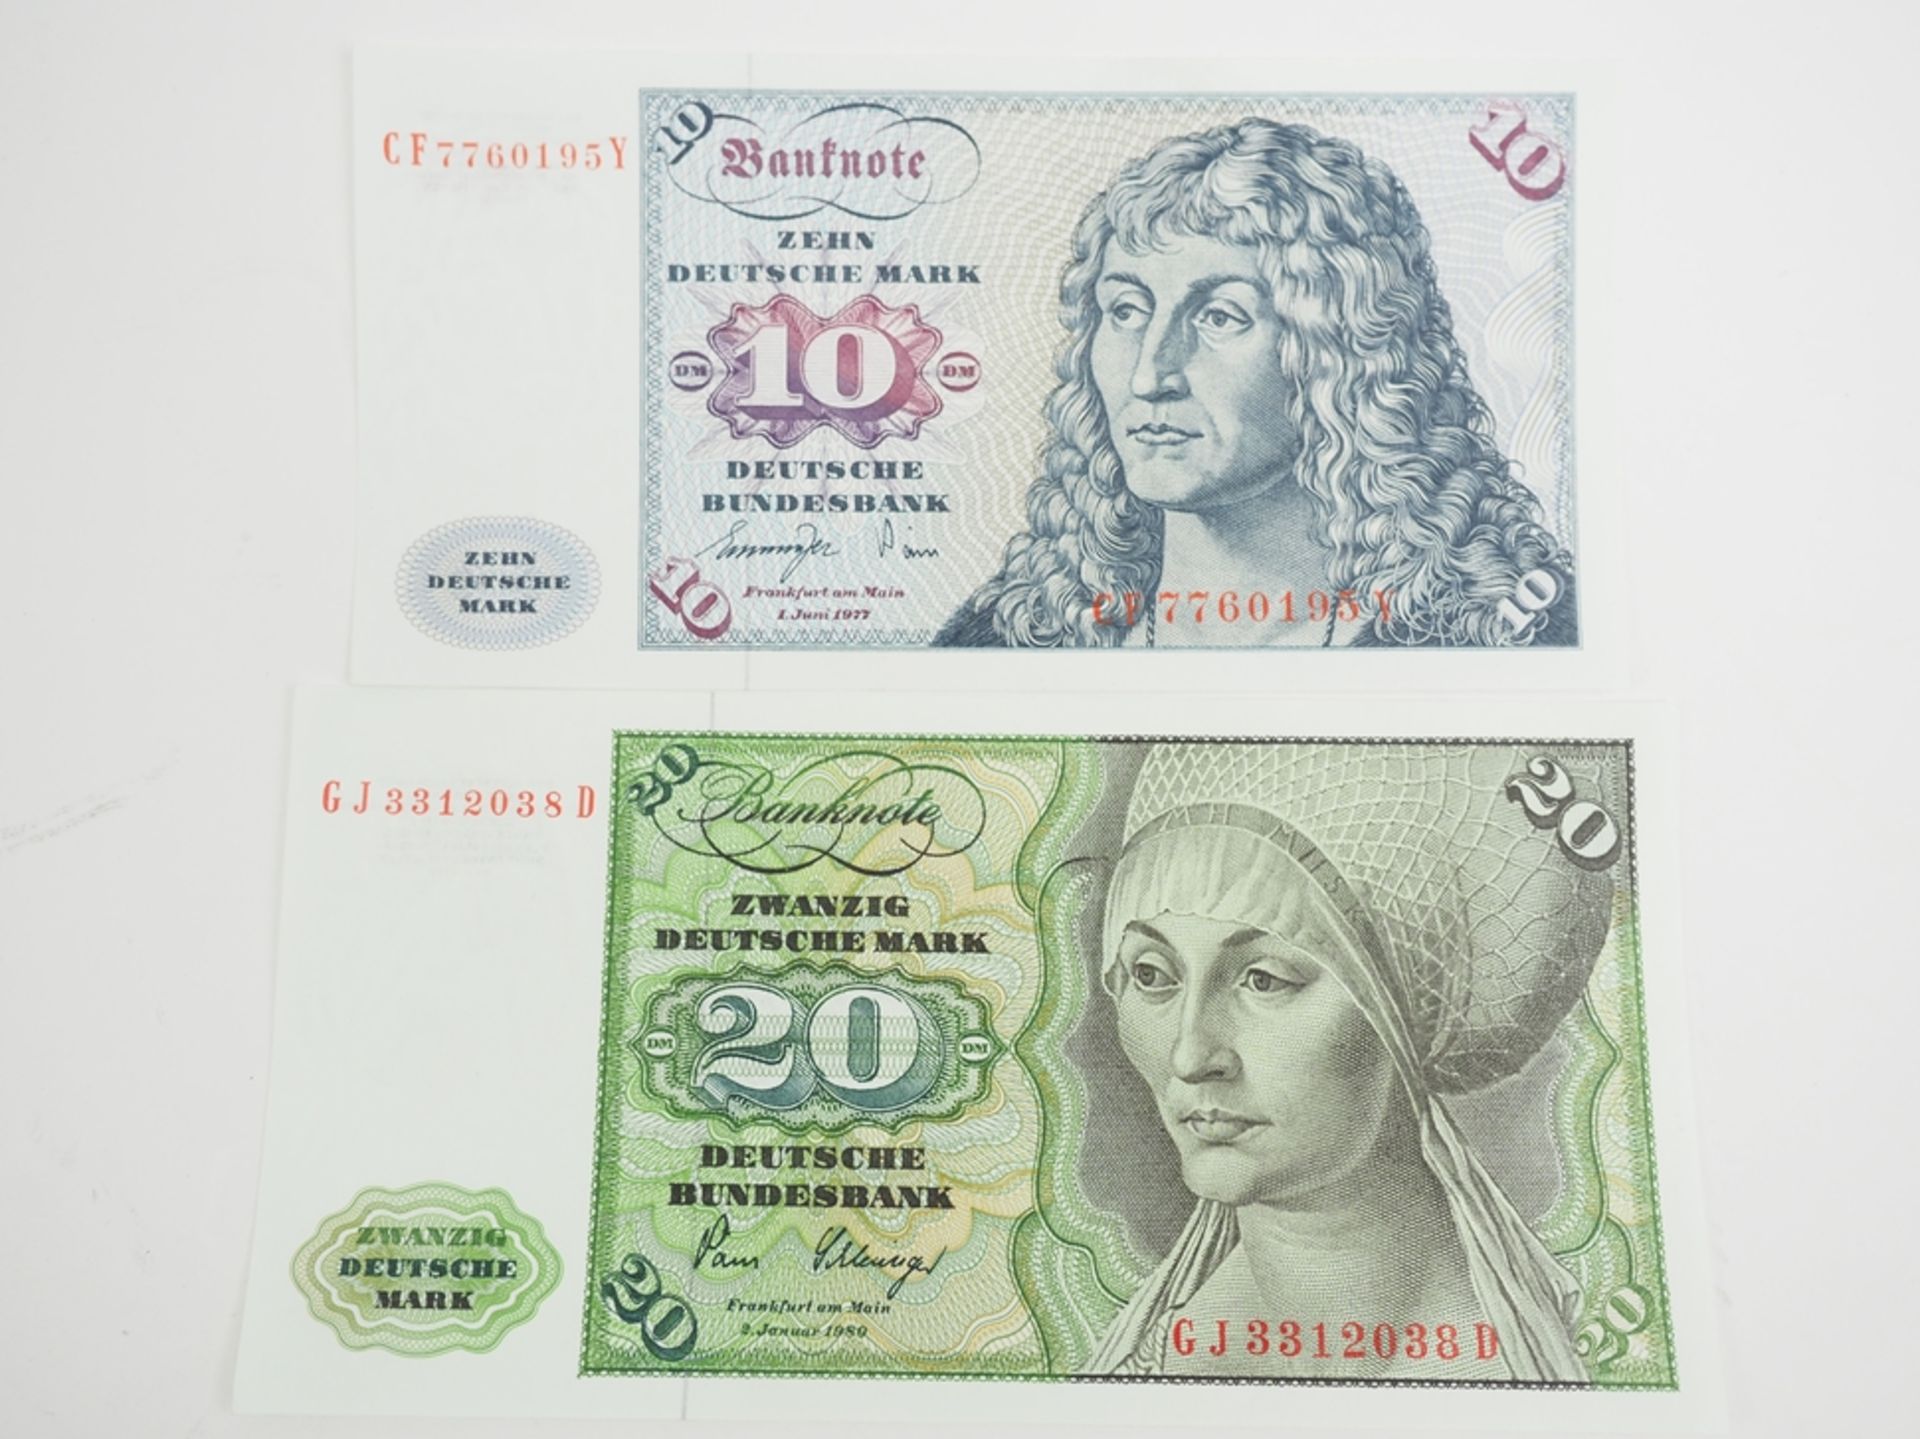 BRD Deutsche Mark: 10 DM u. 20 DM.